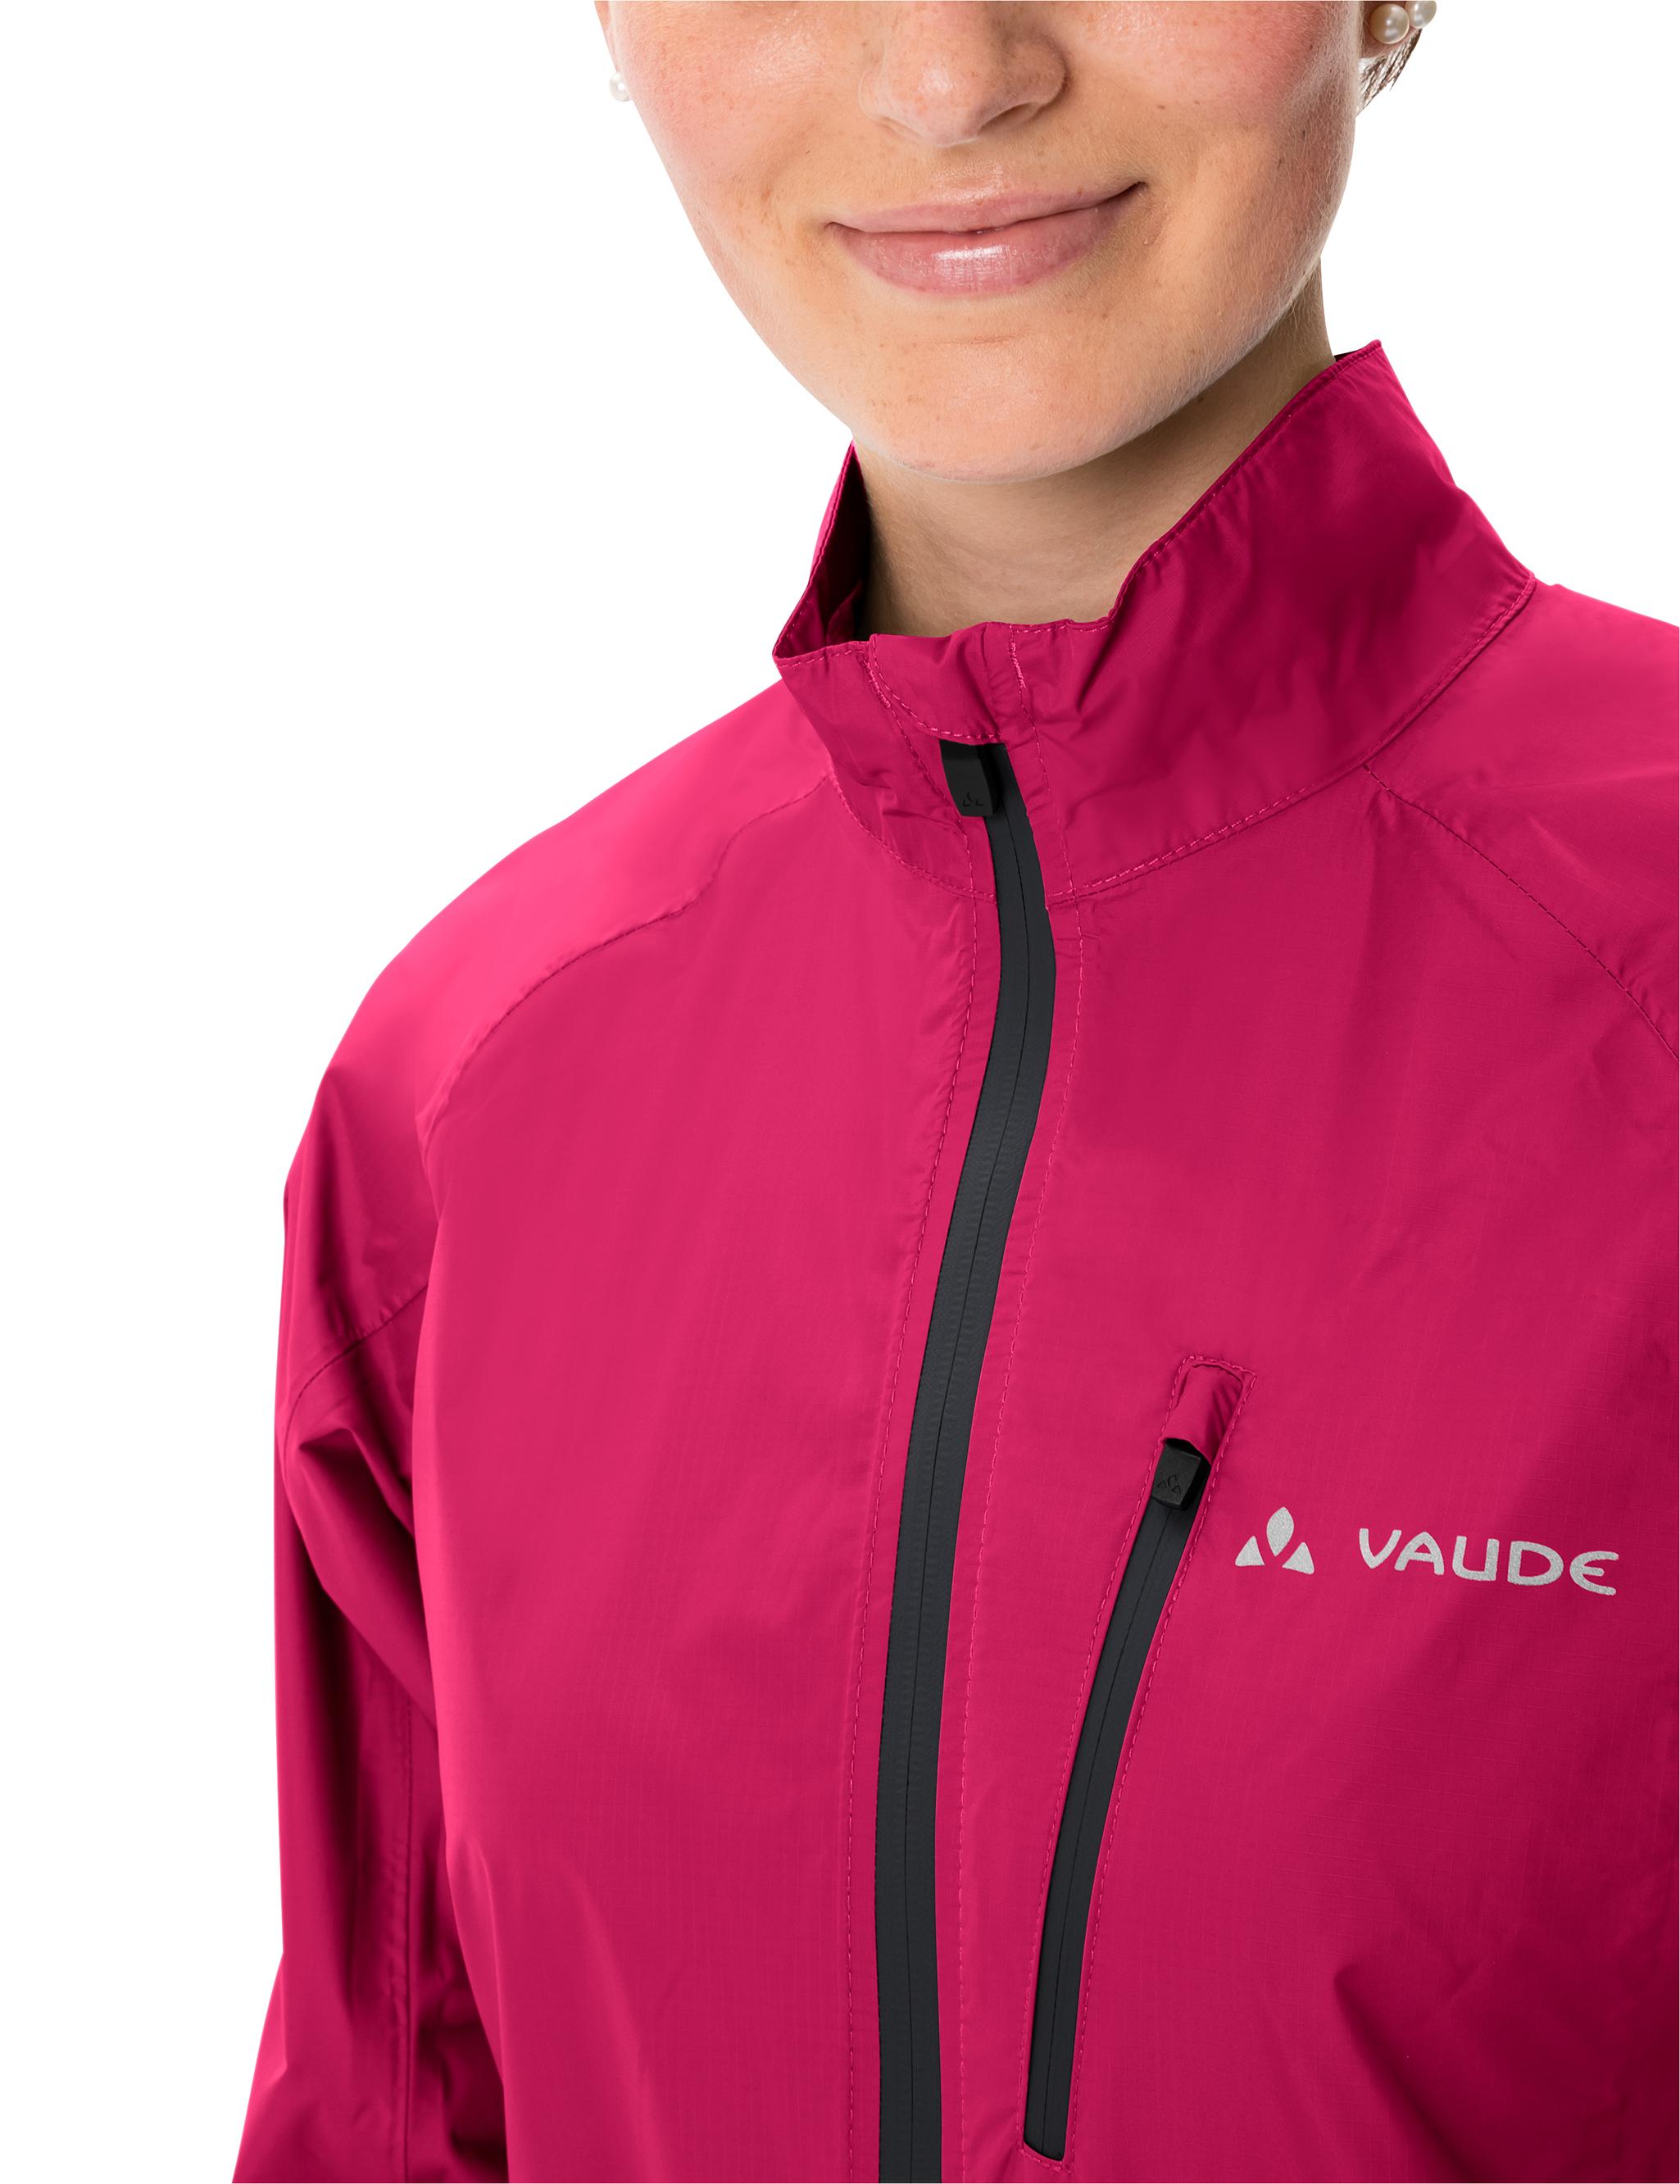 VAUDE Women's Drop Jacket III Outdoorjacke Damen bramble im Online von SportScheck kaufen